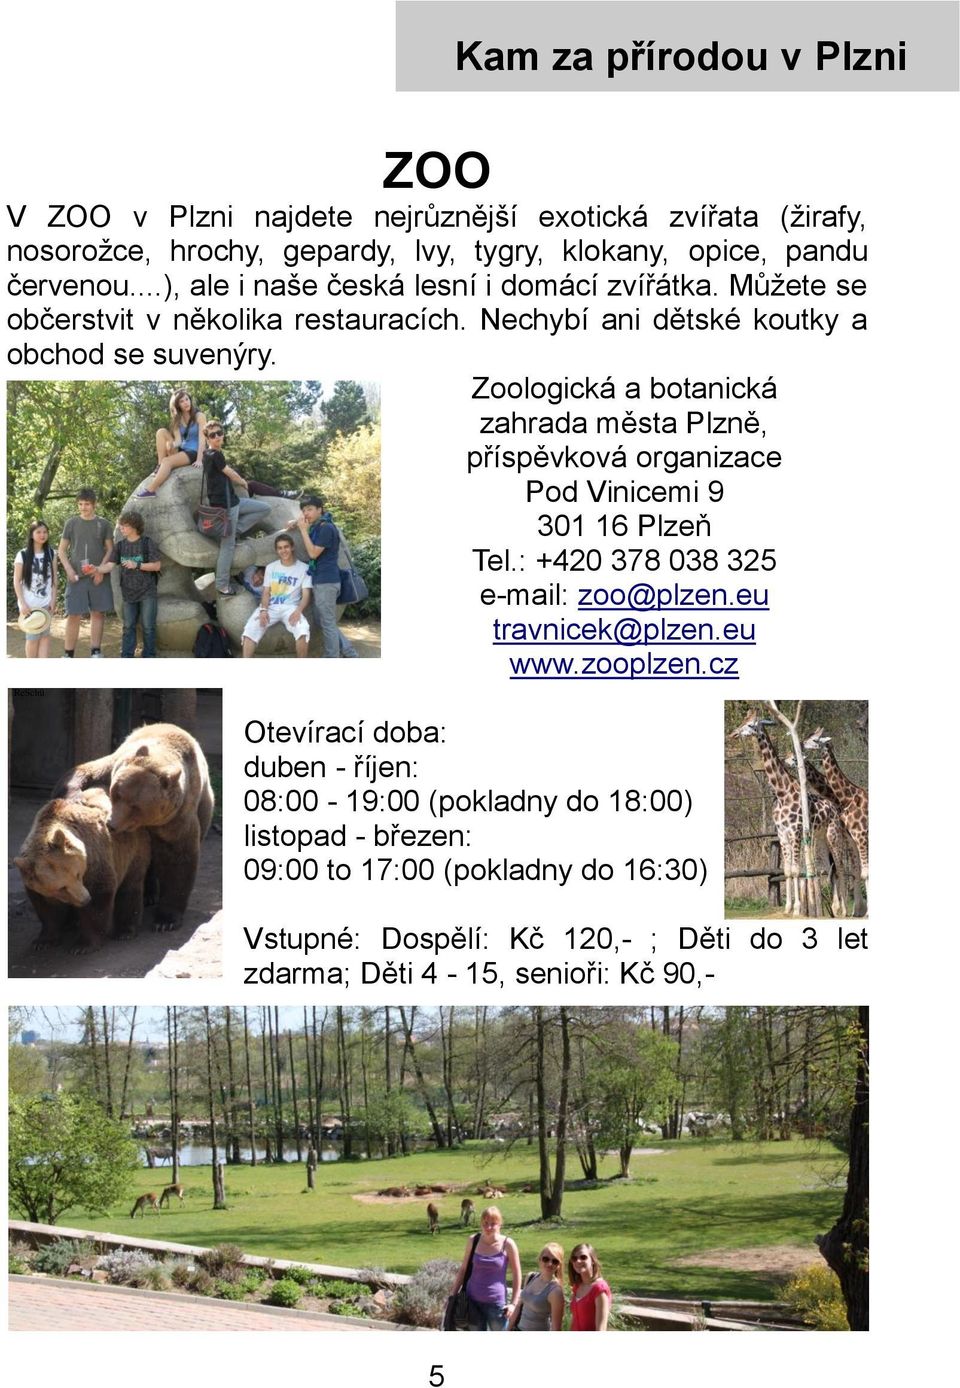 Zoologická a botanická zahrada města Plzně, příspěvková organizace Pod Vinicemi 9 301 16 Plzeň Tel.: +420 378 038 325 e-mail: zoo@plzen.eu travnicek@plzen.eu www.